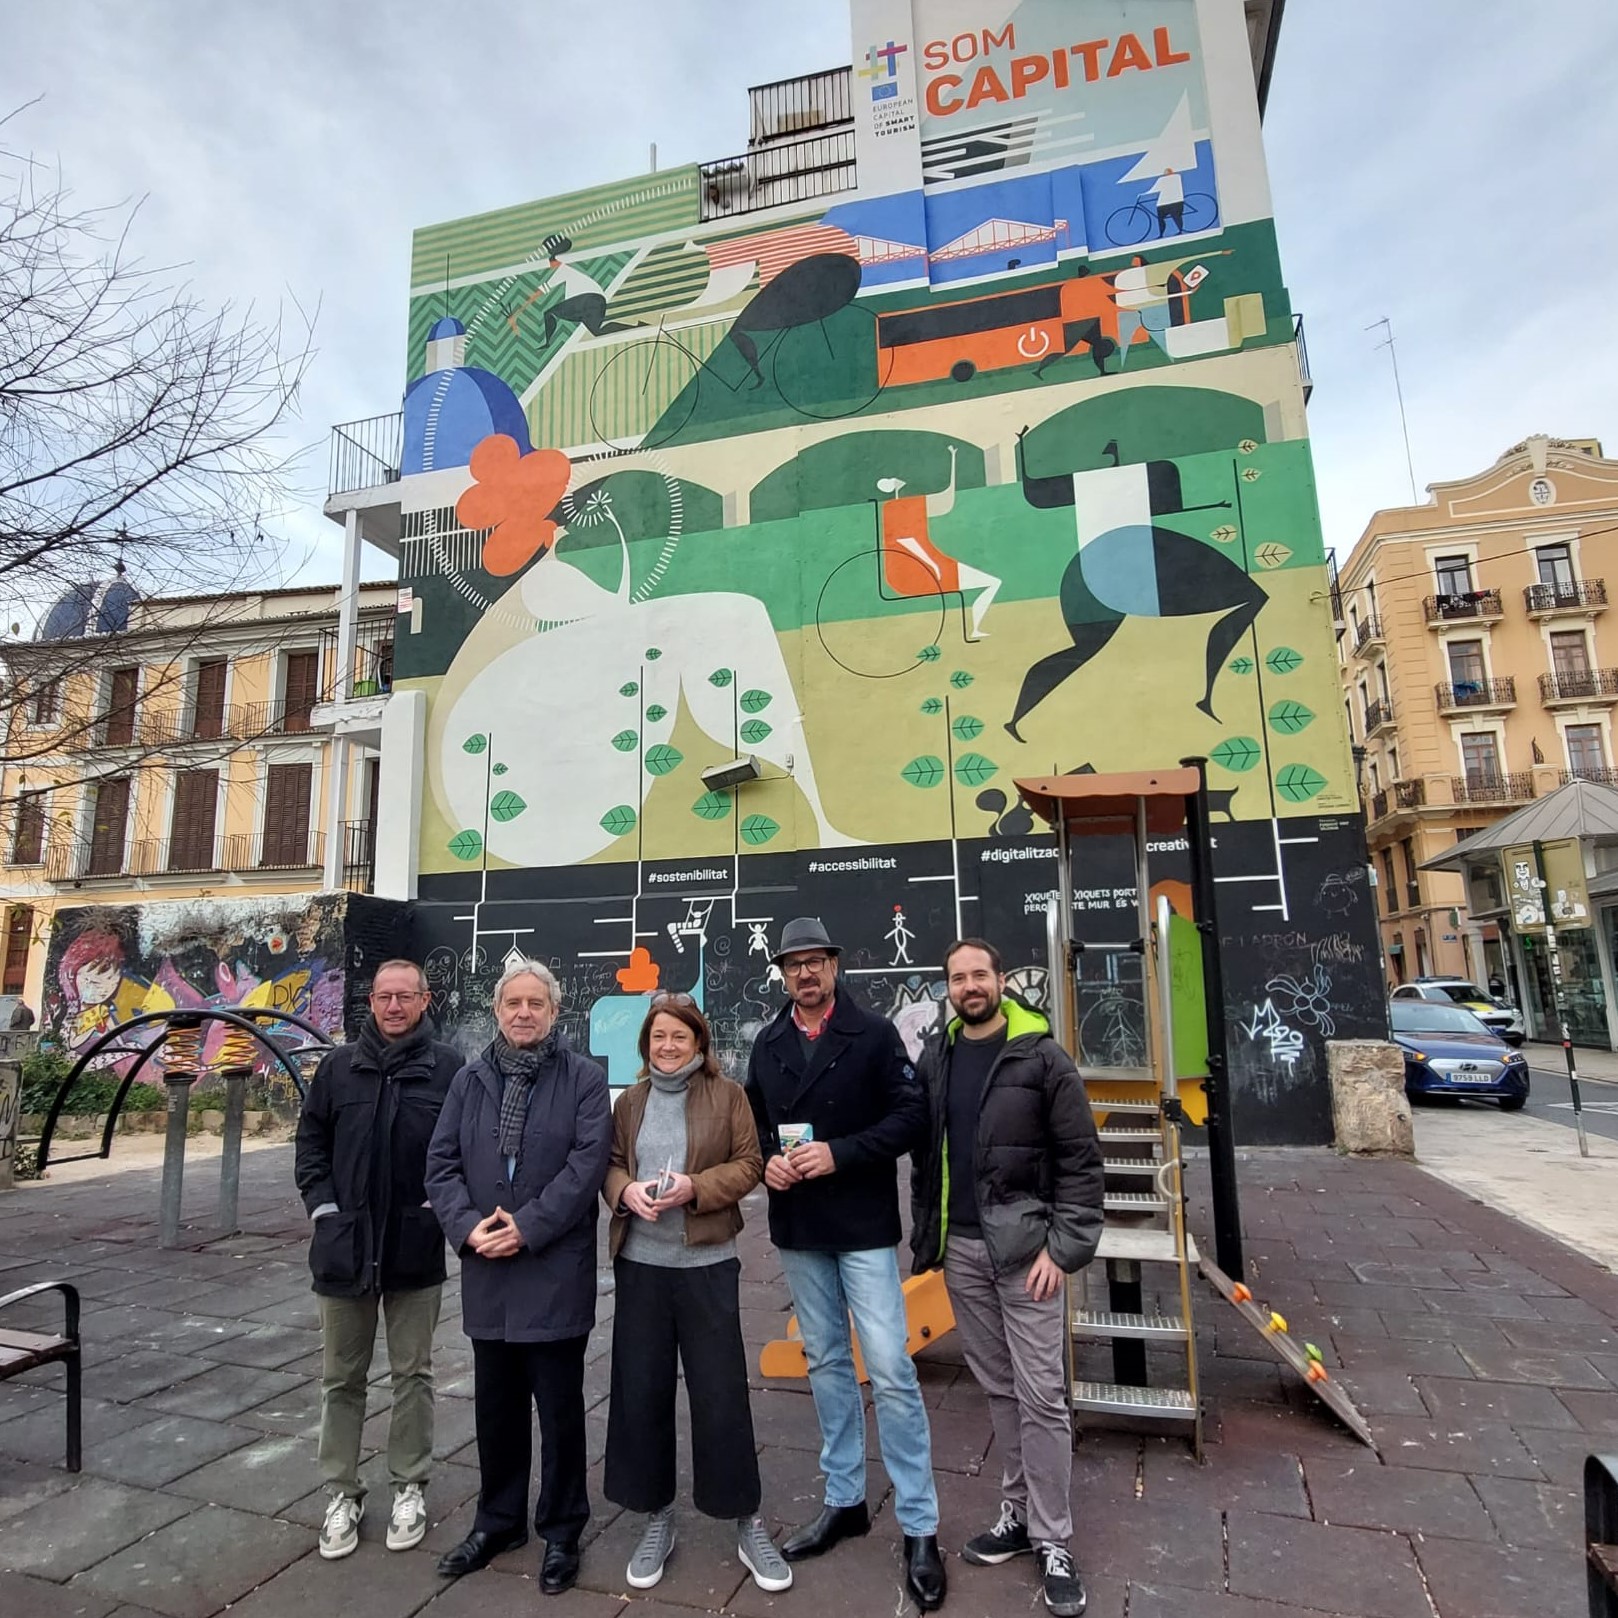 Mural Smart Capital